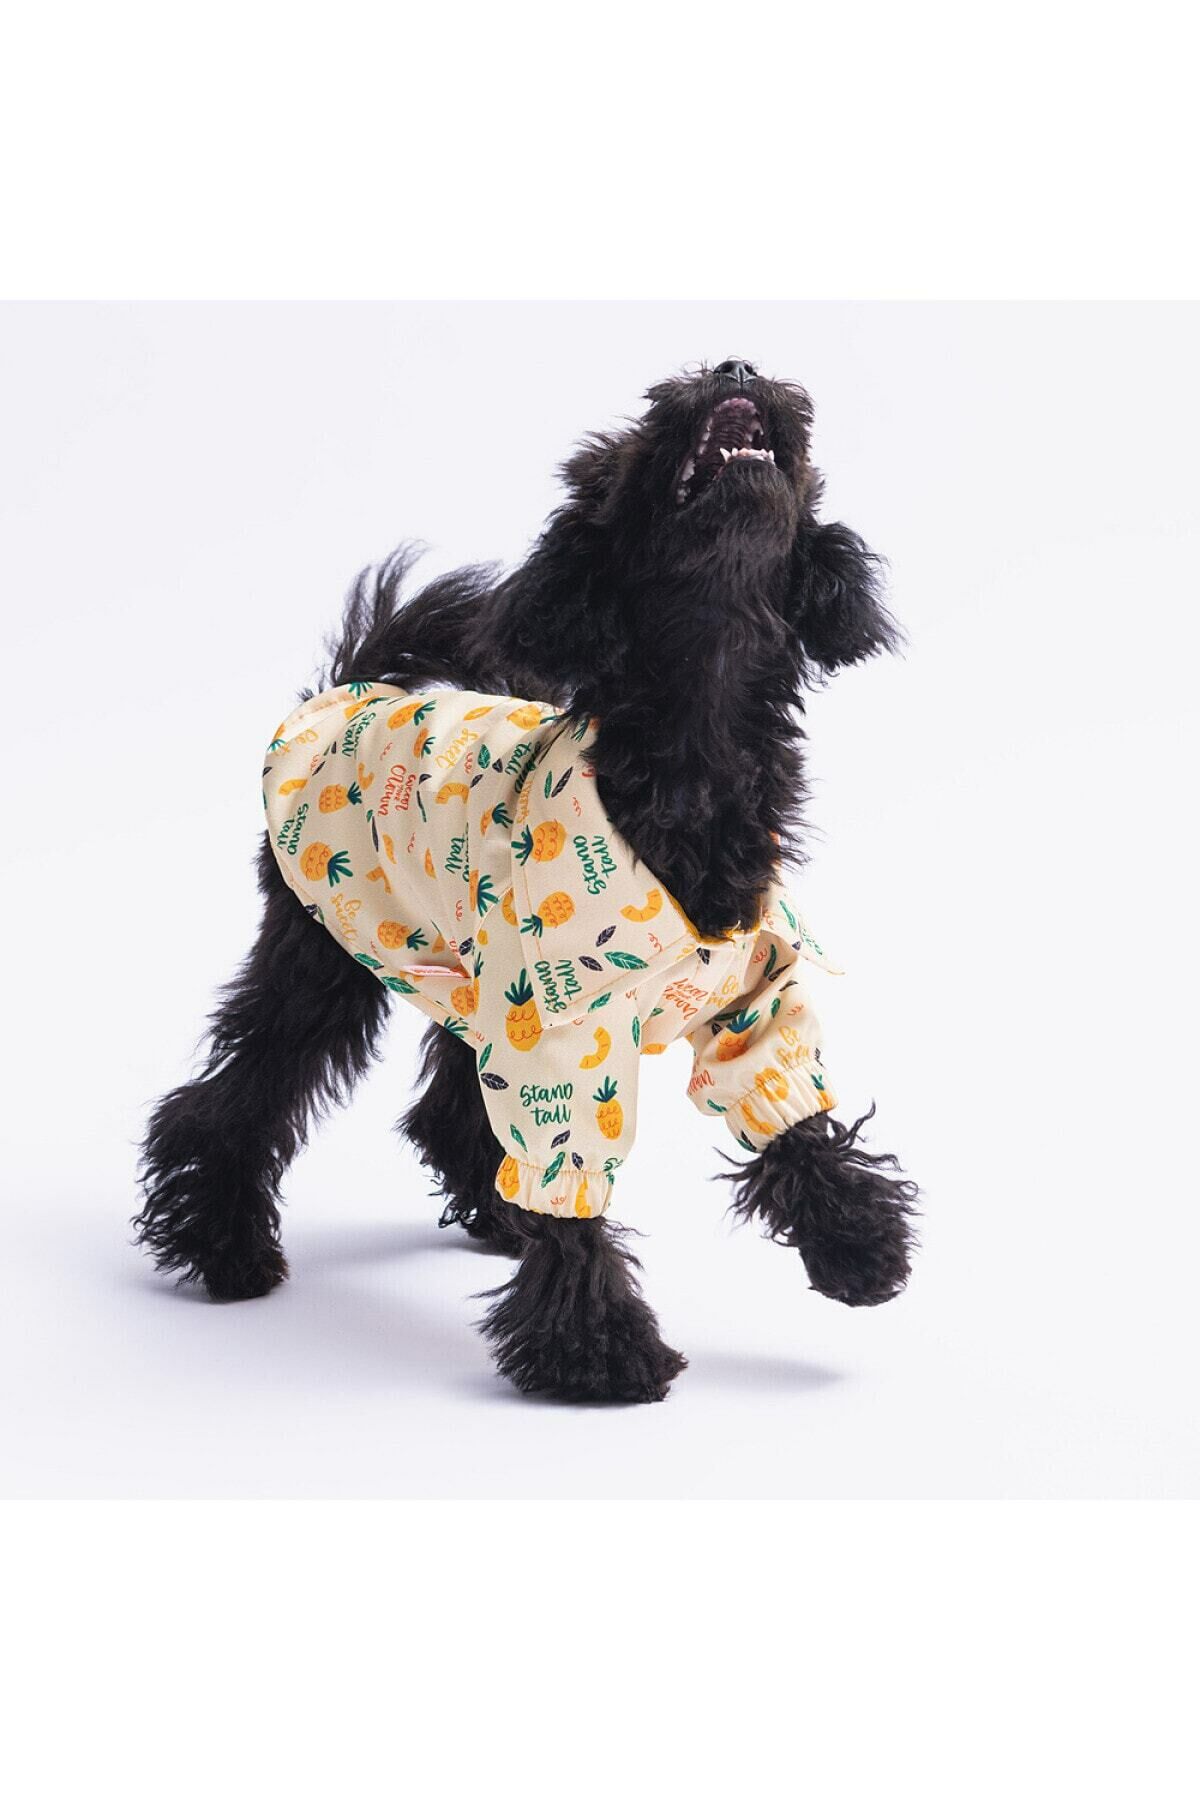 Pineapple Kedi Köpek Gömleği - Kedi Köpek Kıyafeti